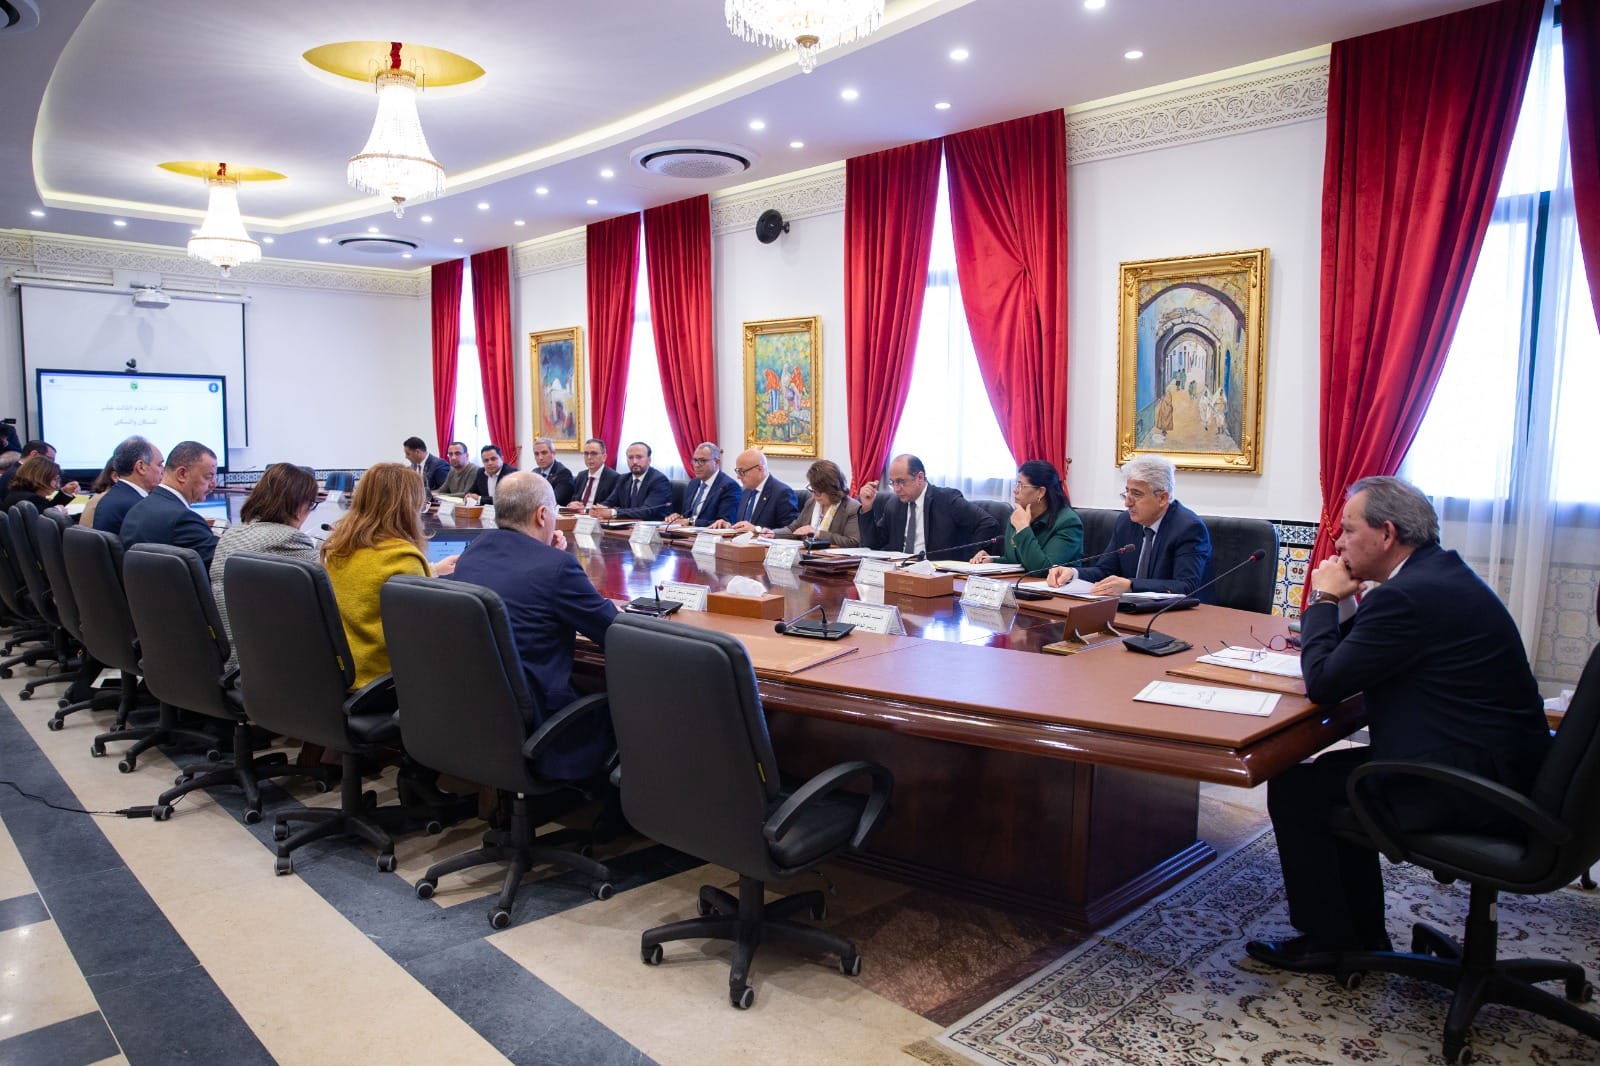  رئيس الحكومة يشرف على مجلس وزاري حول التعداد العام للسكان والسكنى 